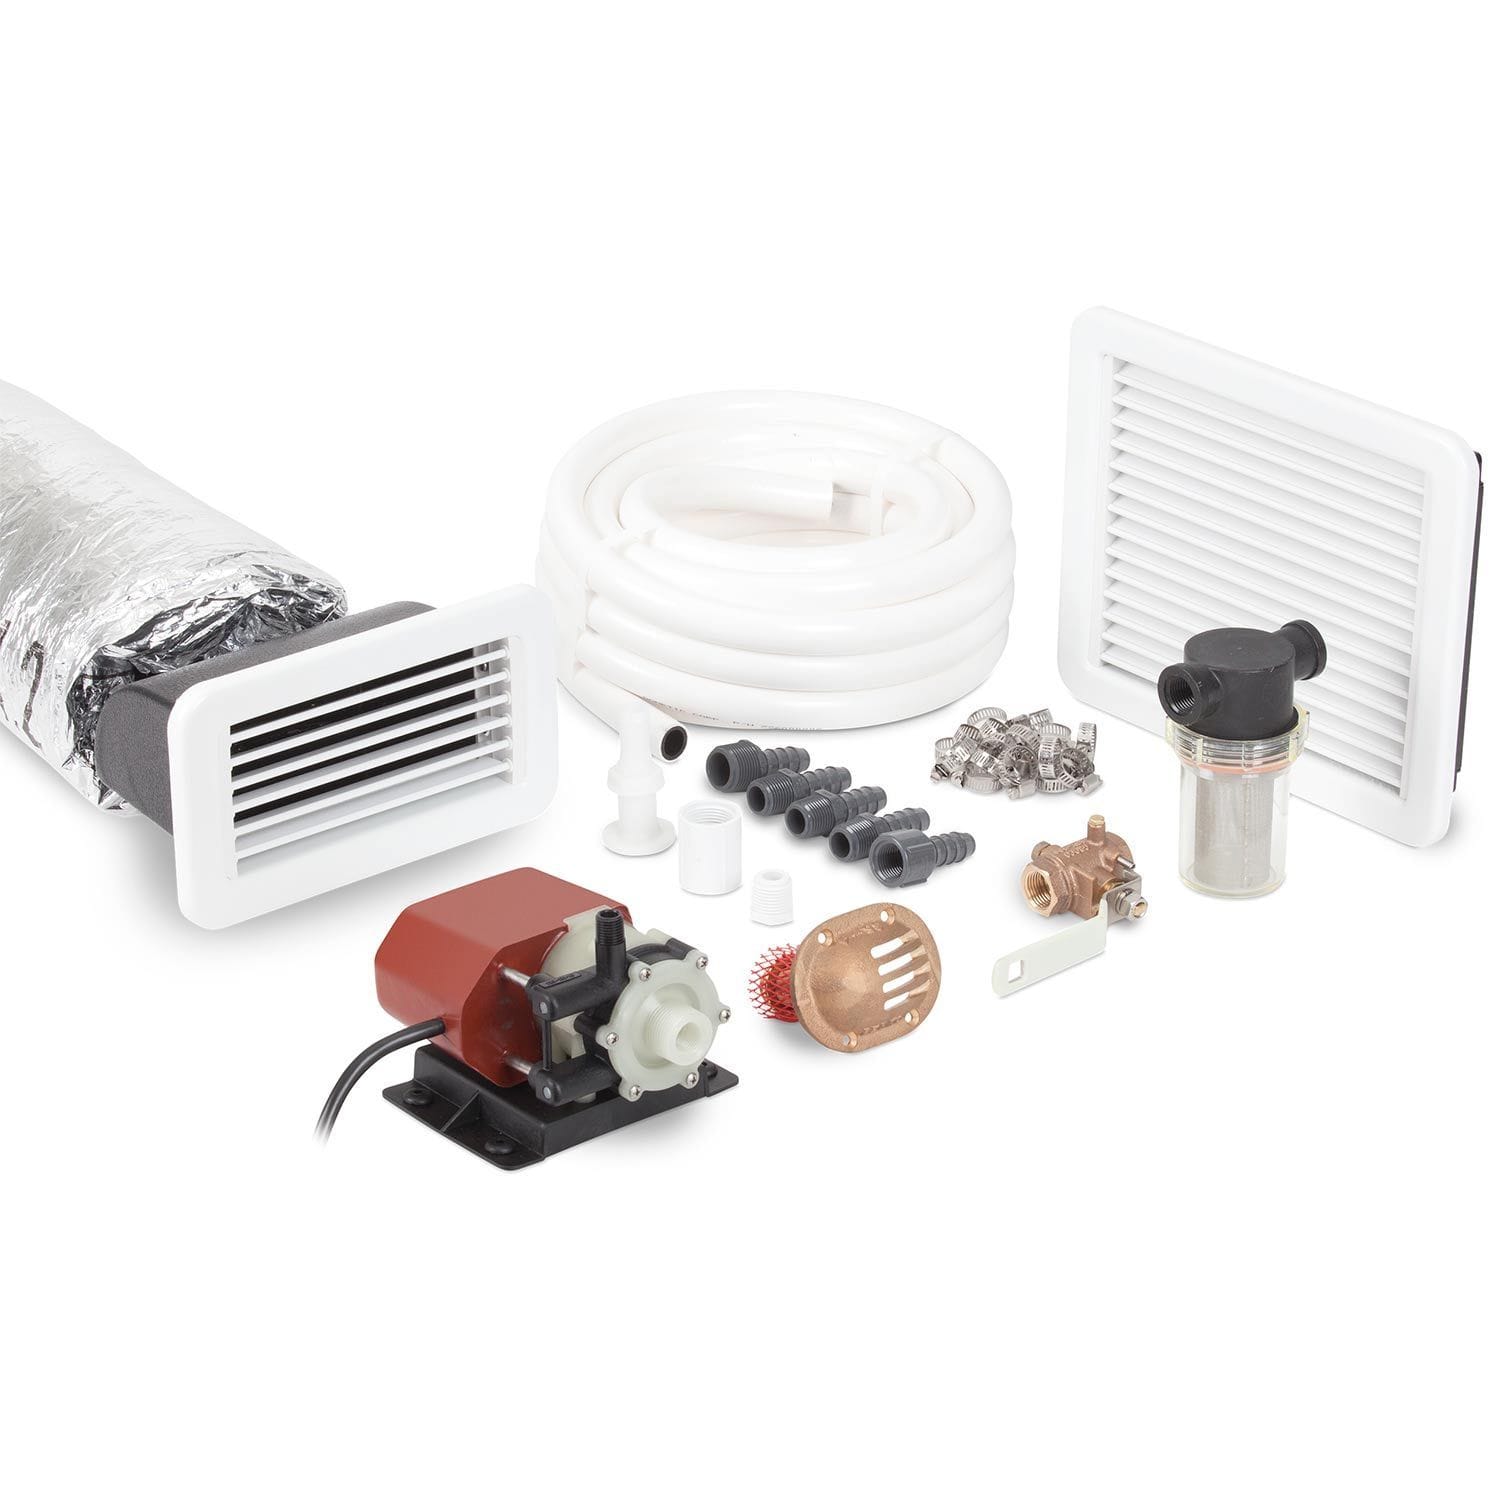 Dometic Sealand 218000106 6000 BTU Installation Kit for EnviroComfort Air Conditioner 115V